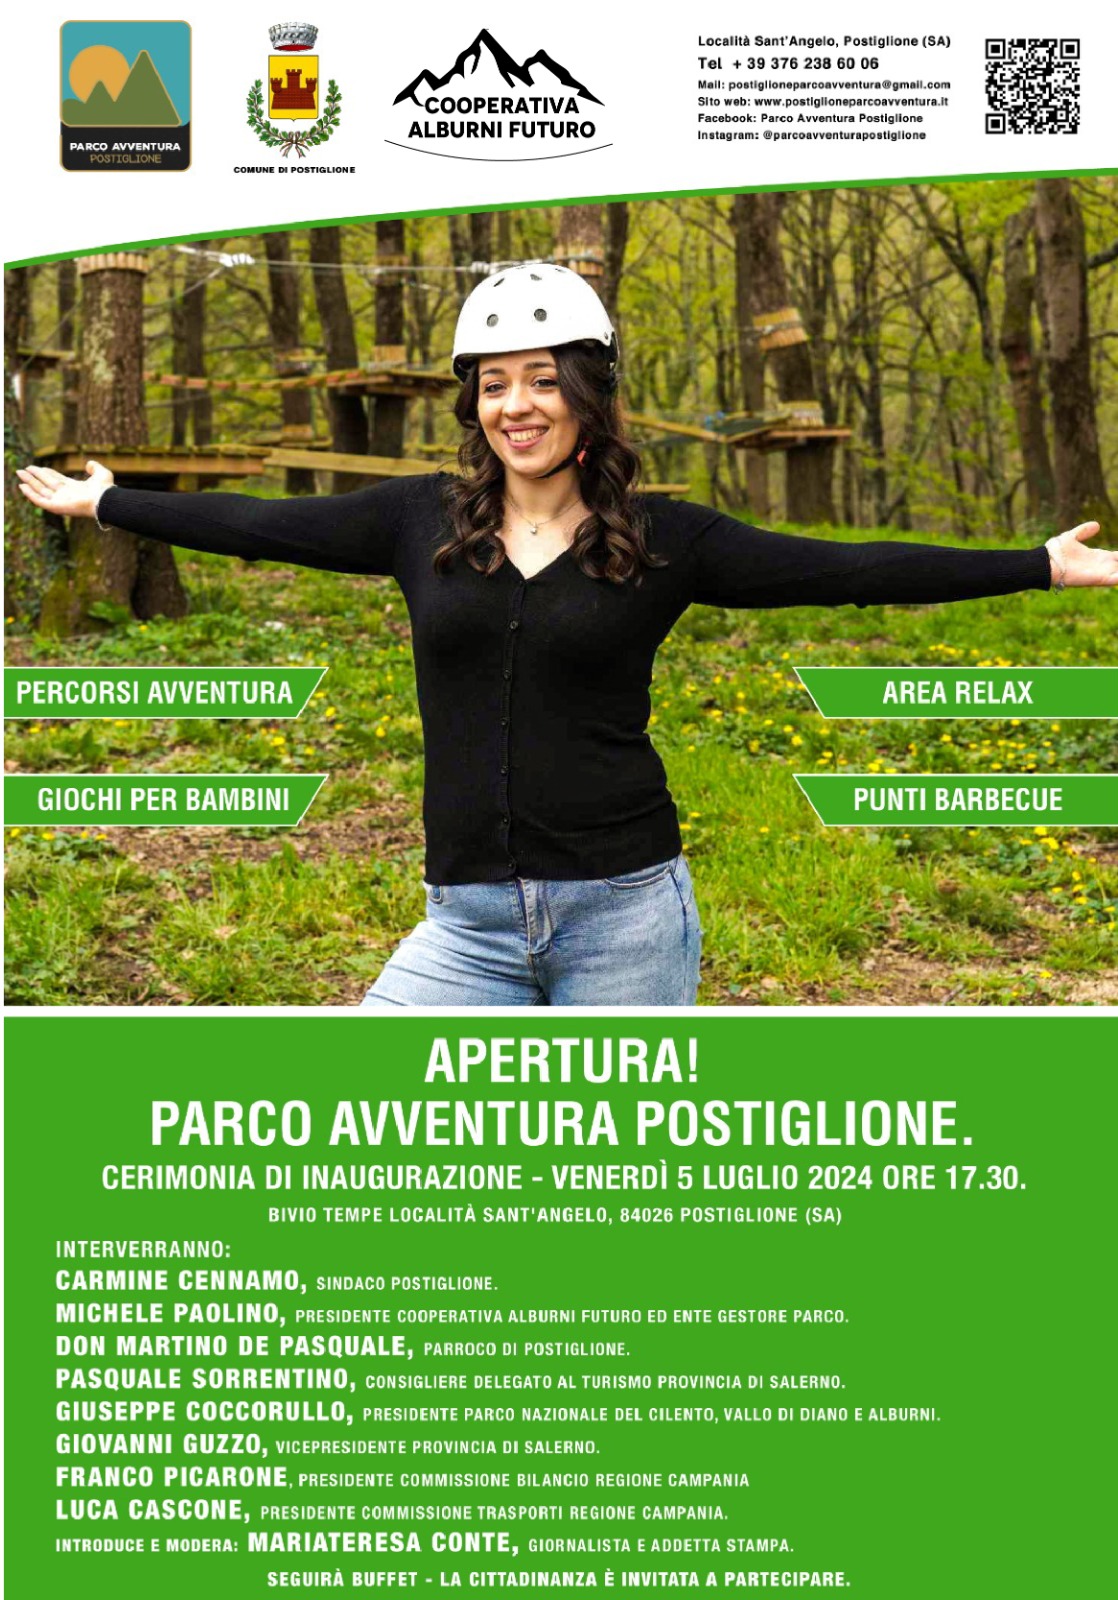 Postiglione: apertura Parco Avventura Postiglione